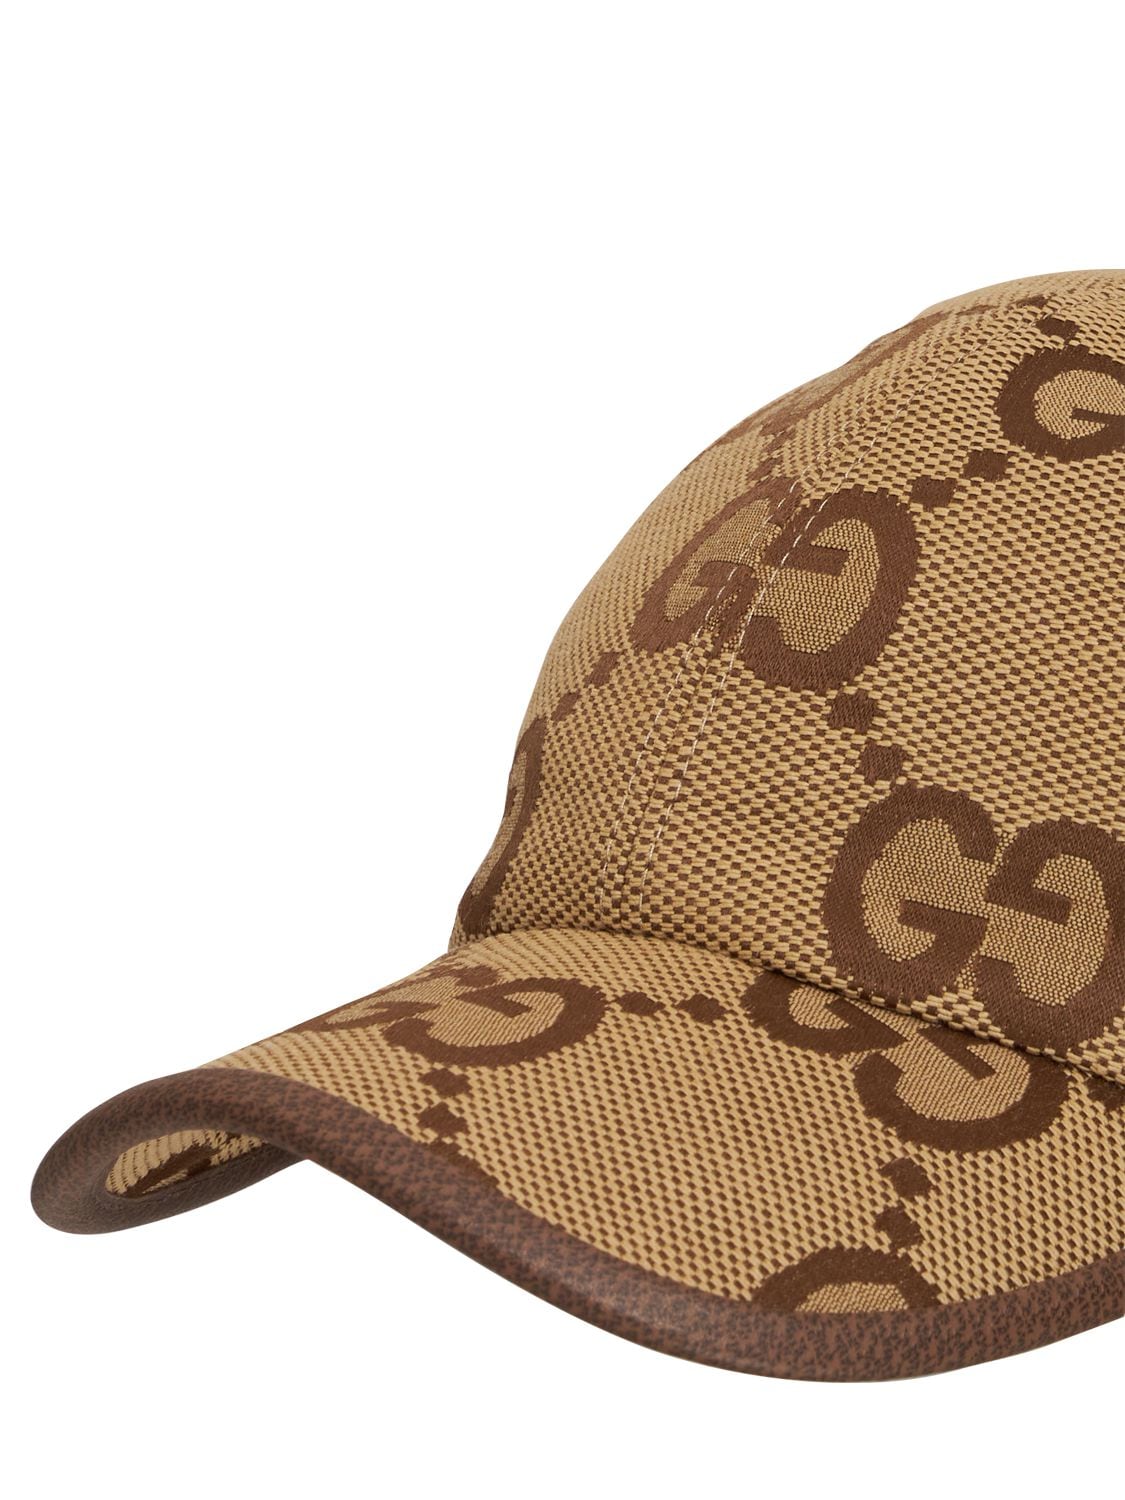 Gucci Men's Maxi GG Canvas Baseball Cap - Natural - Hats